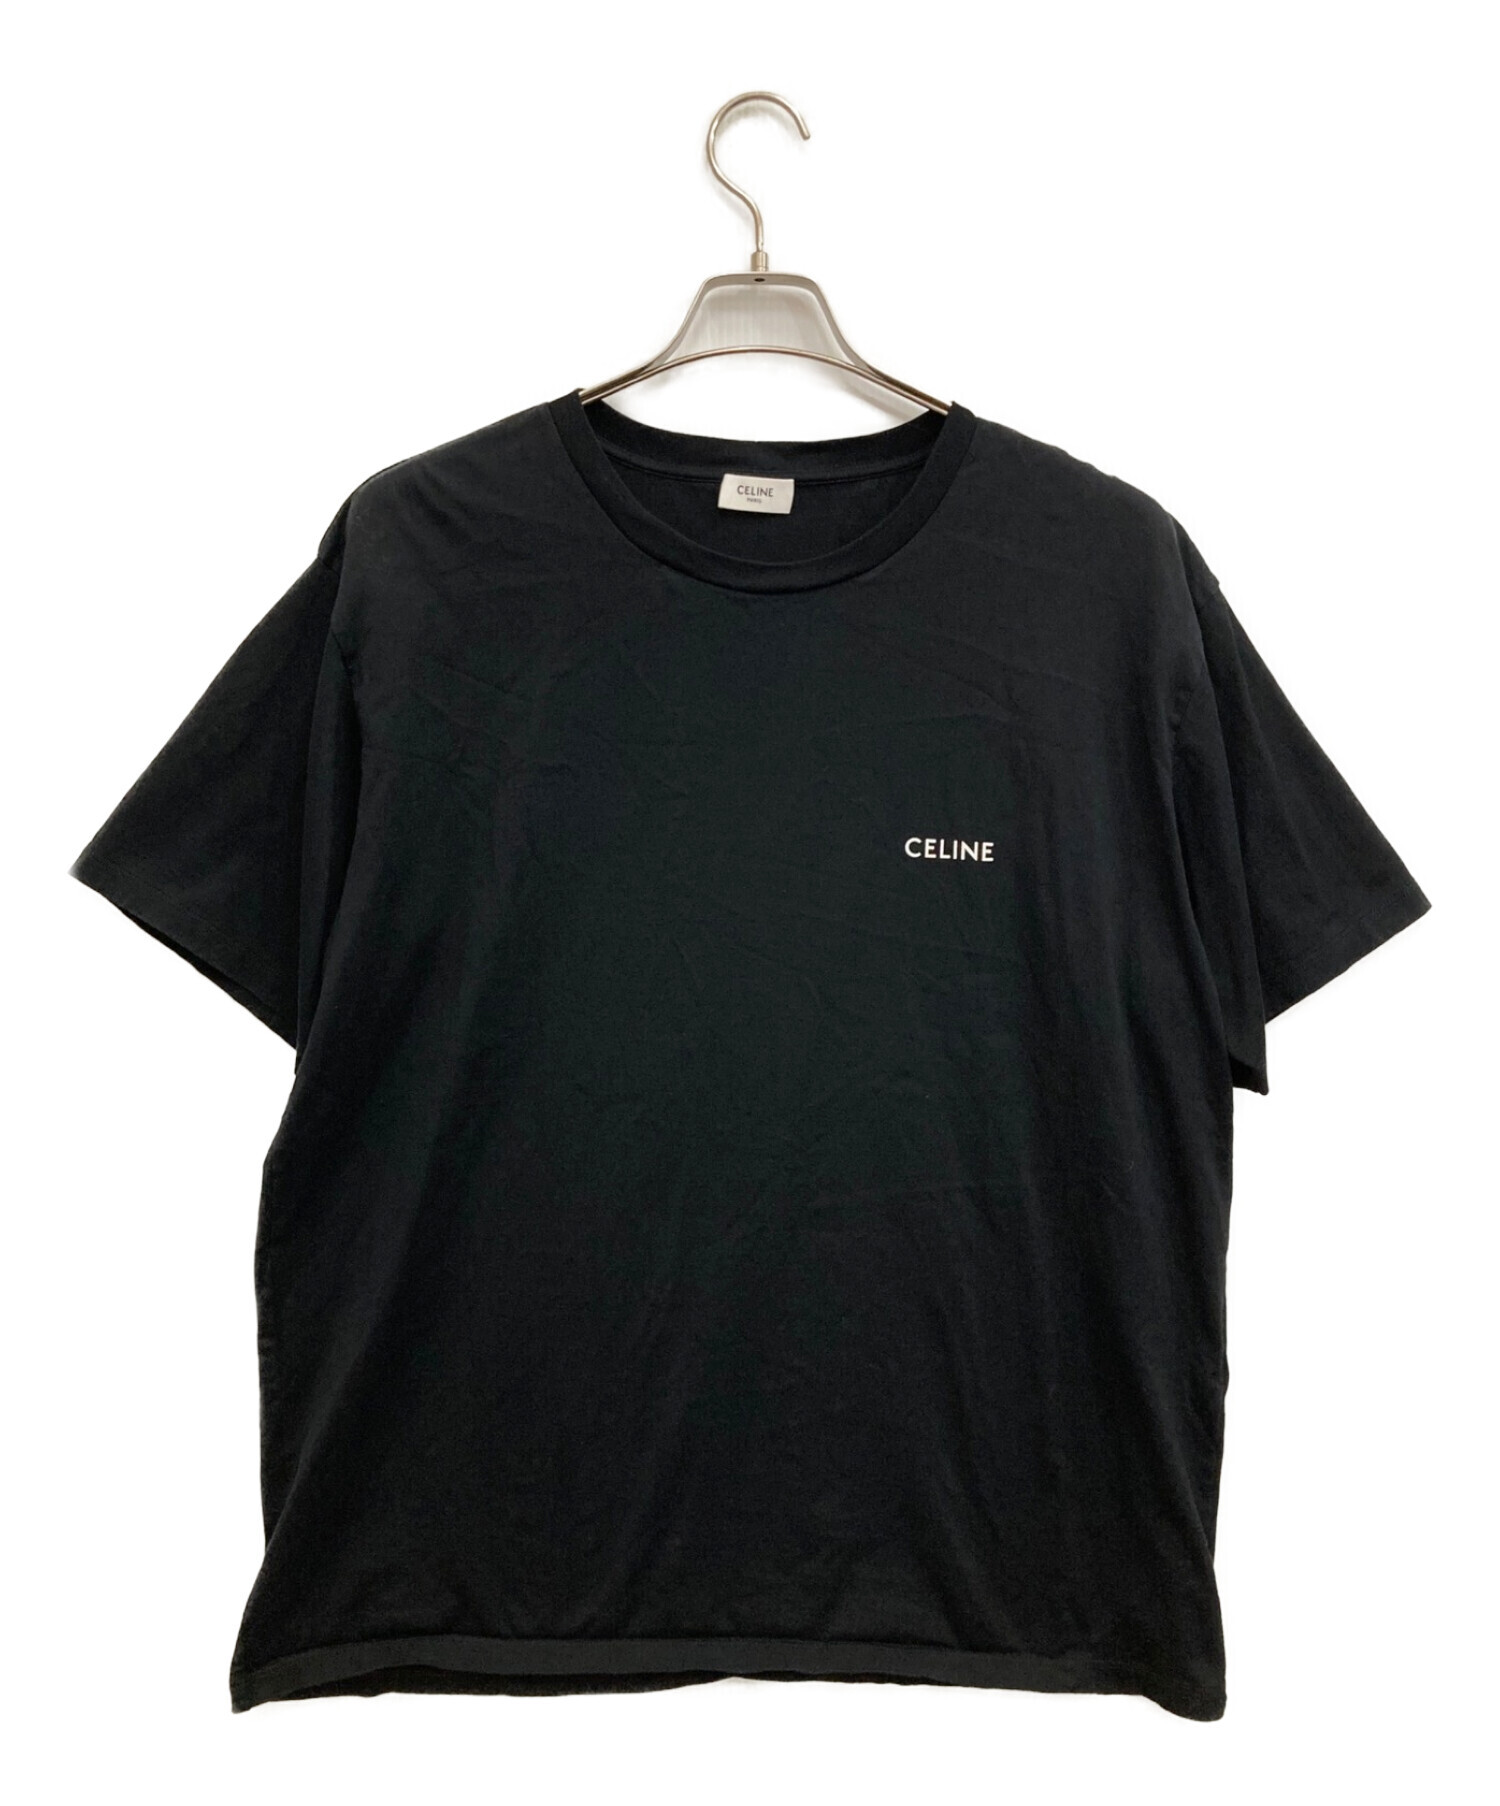 CELINE Tシャツ セリーヌ ブラック Lサイズ - トップス